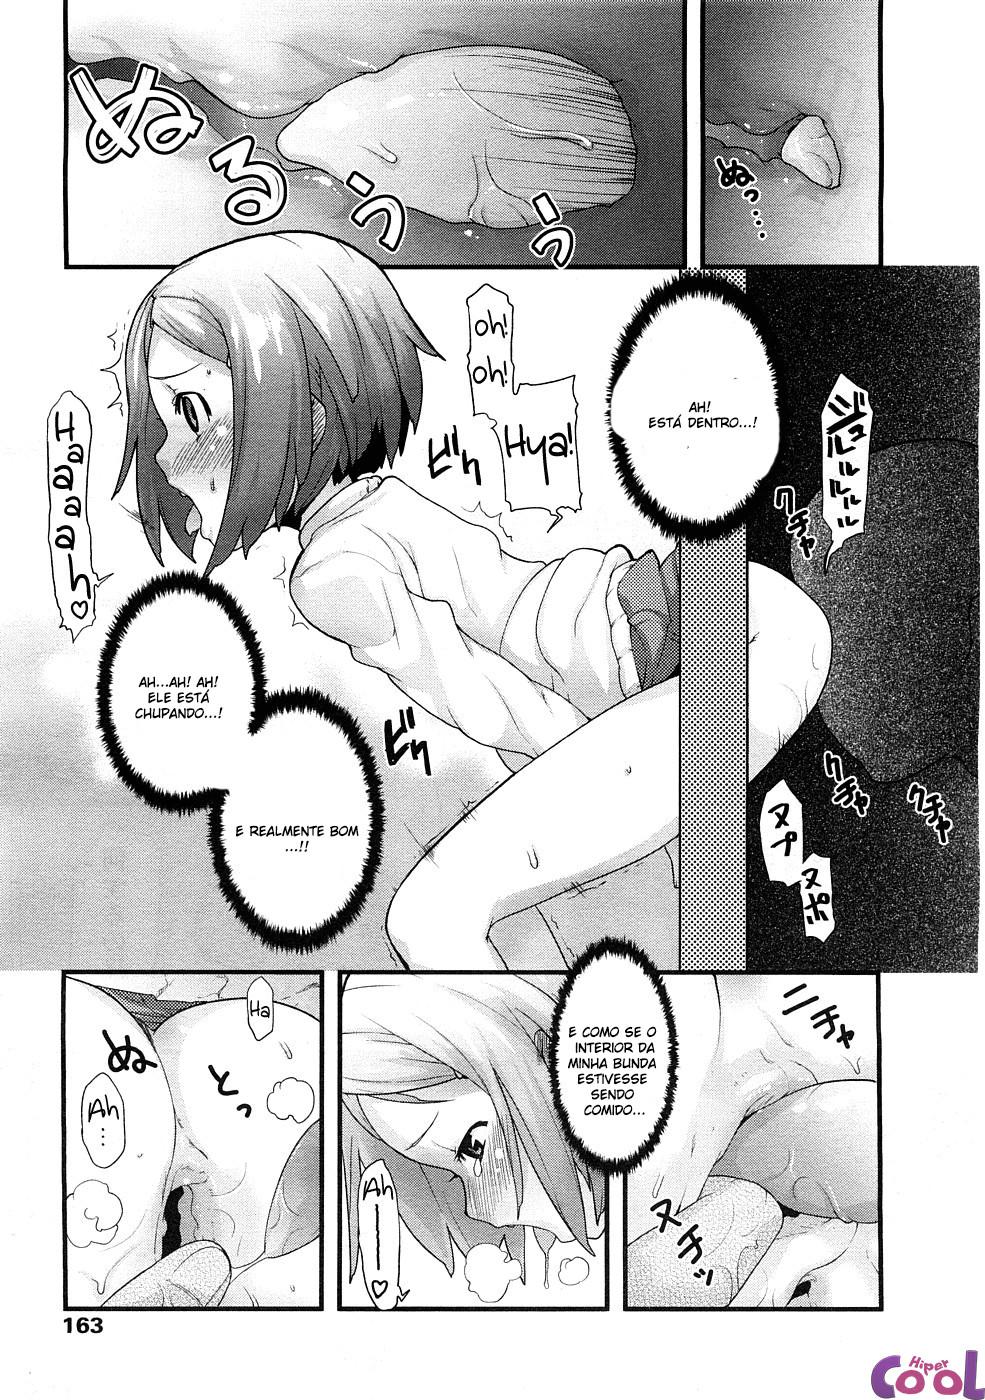 ana-no-toriko-chapter-01-page-09.jpg